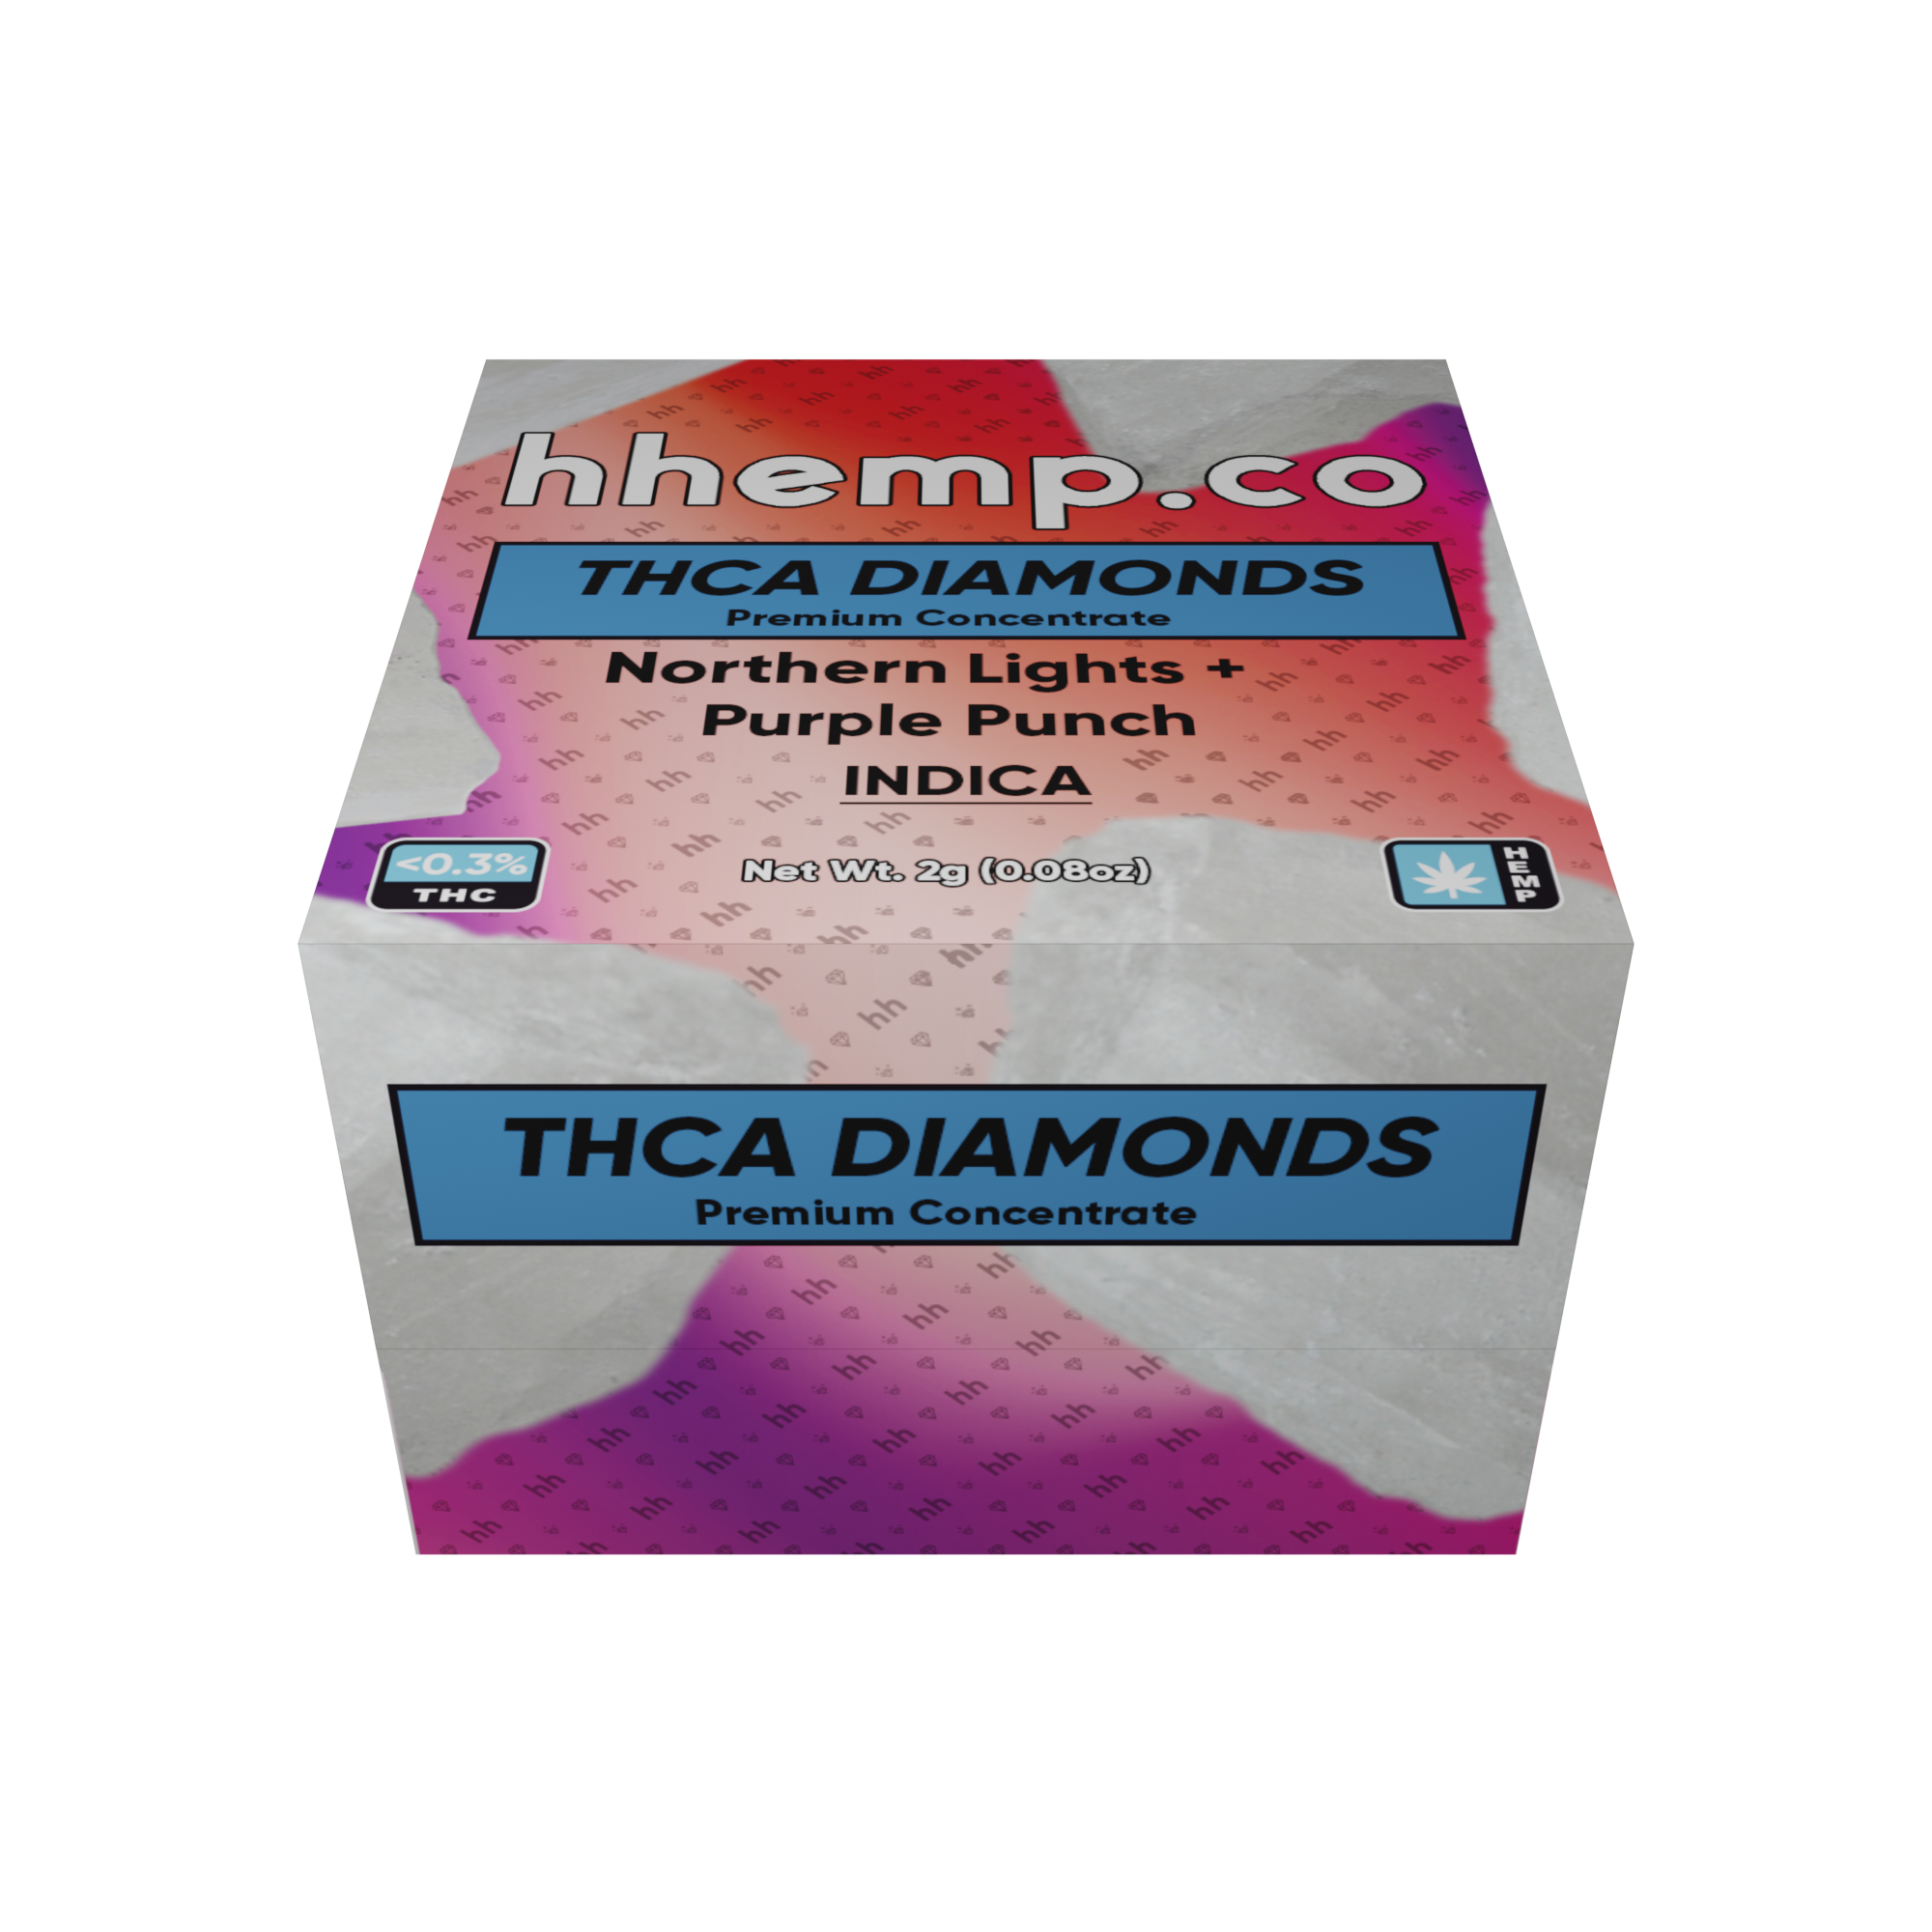 hhemp.co THCA Diamonds 2g